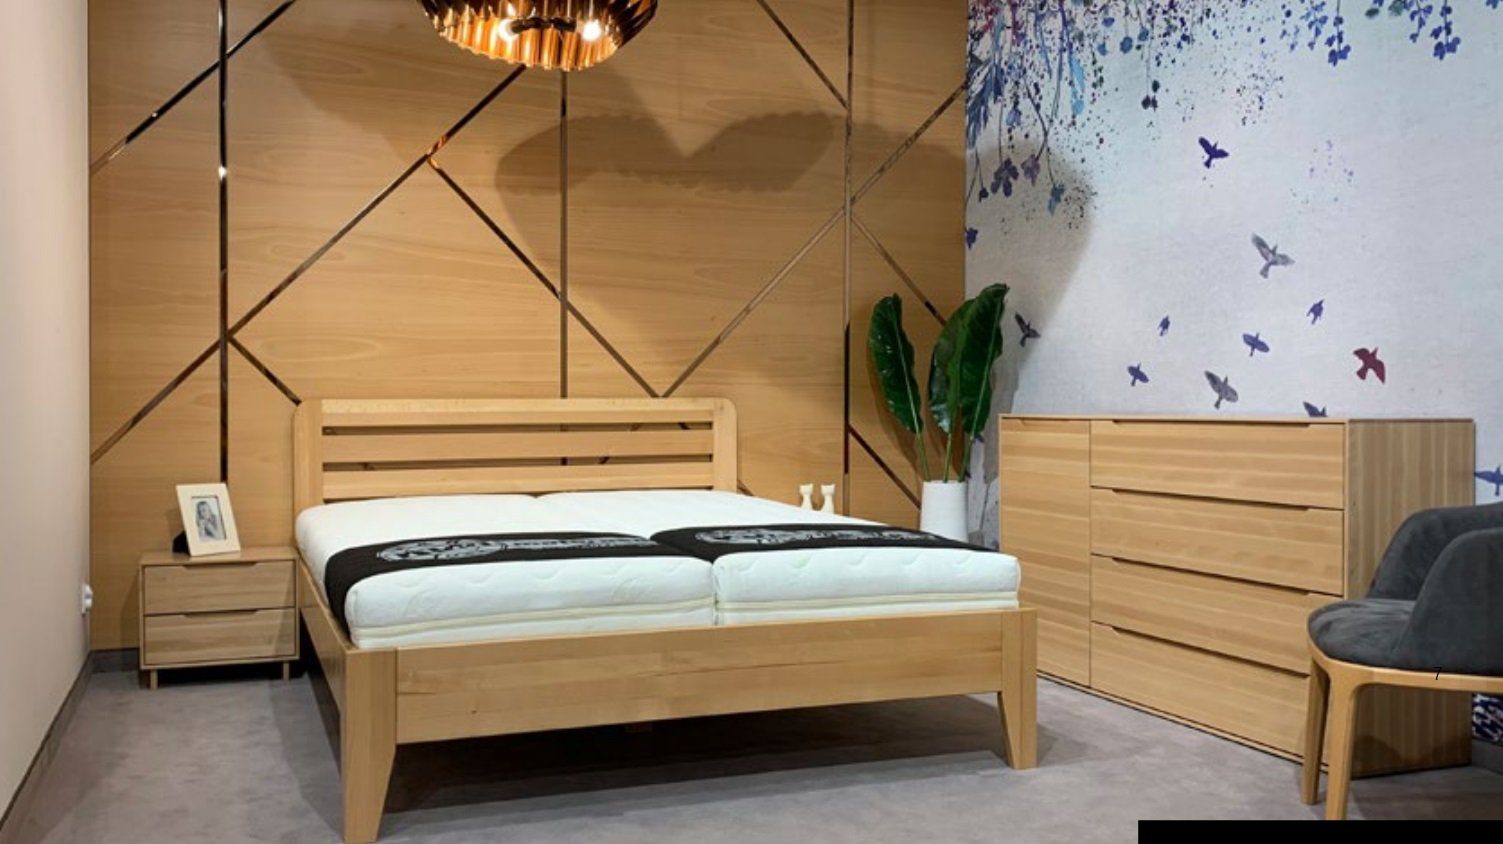 JVmoebel Holzbett, Schlafzimmer Holzbett Echtes Hotel Stil Massive Möbel Betten